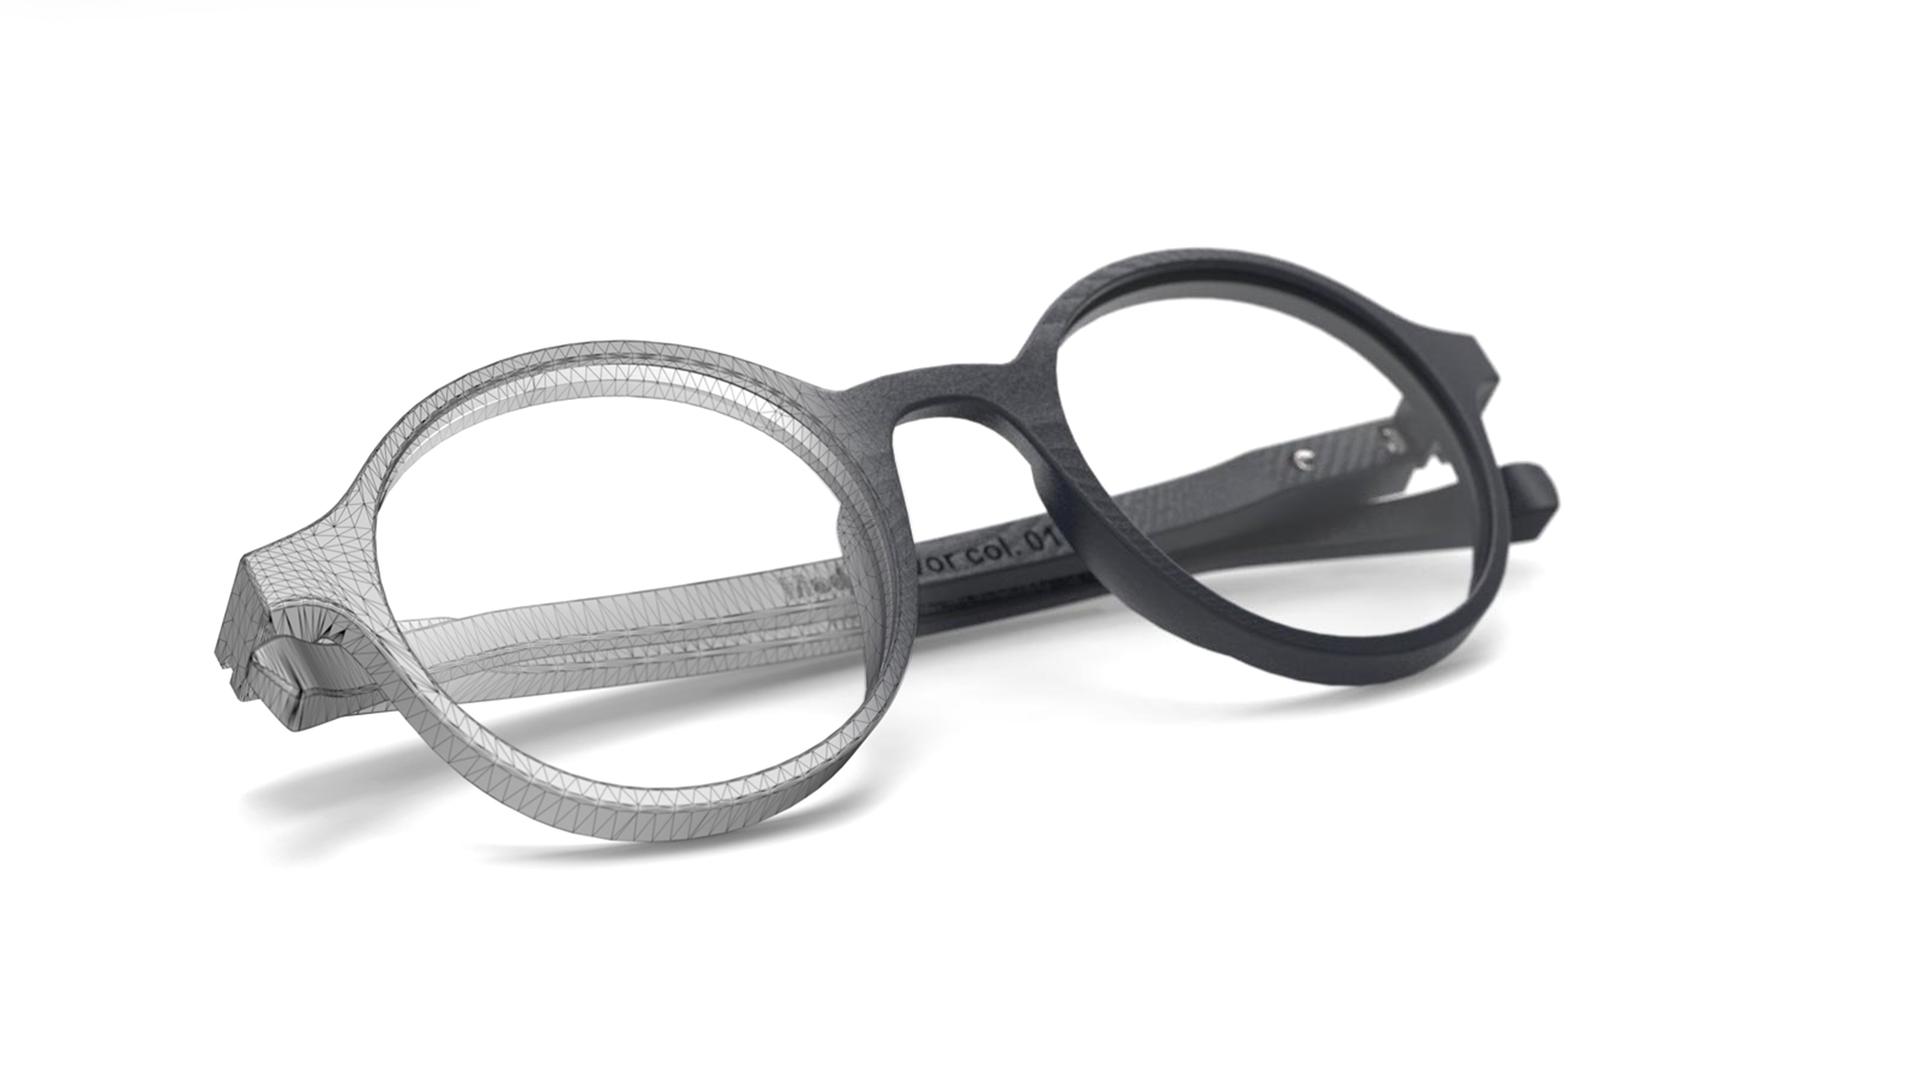 Nyt Syn Egedal - Briller og kontaktlinser | Find opticians in | FAVR